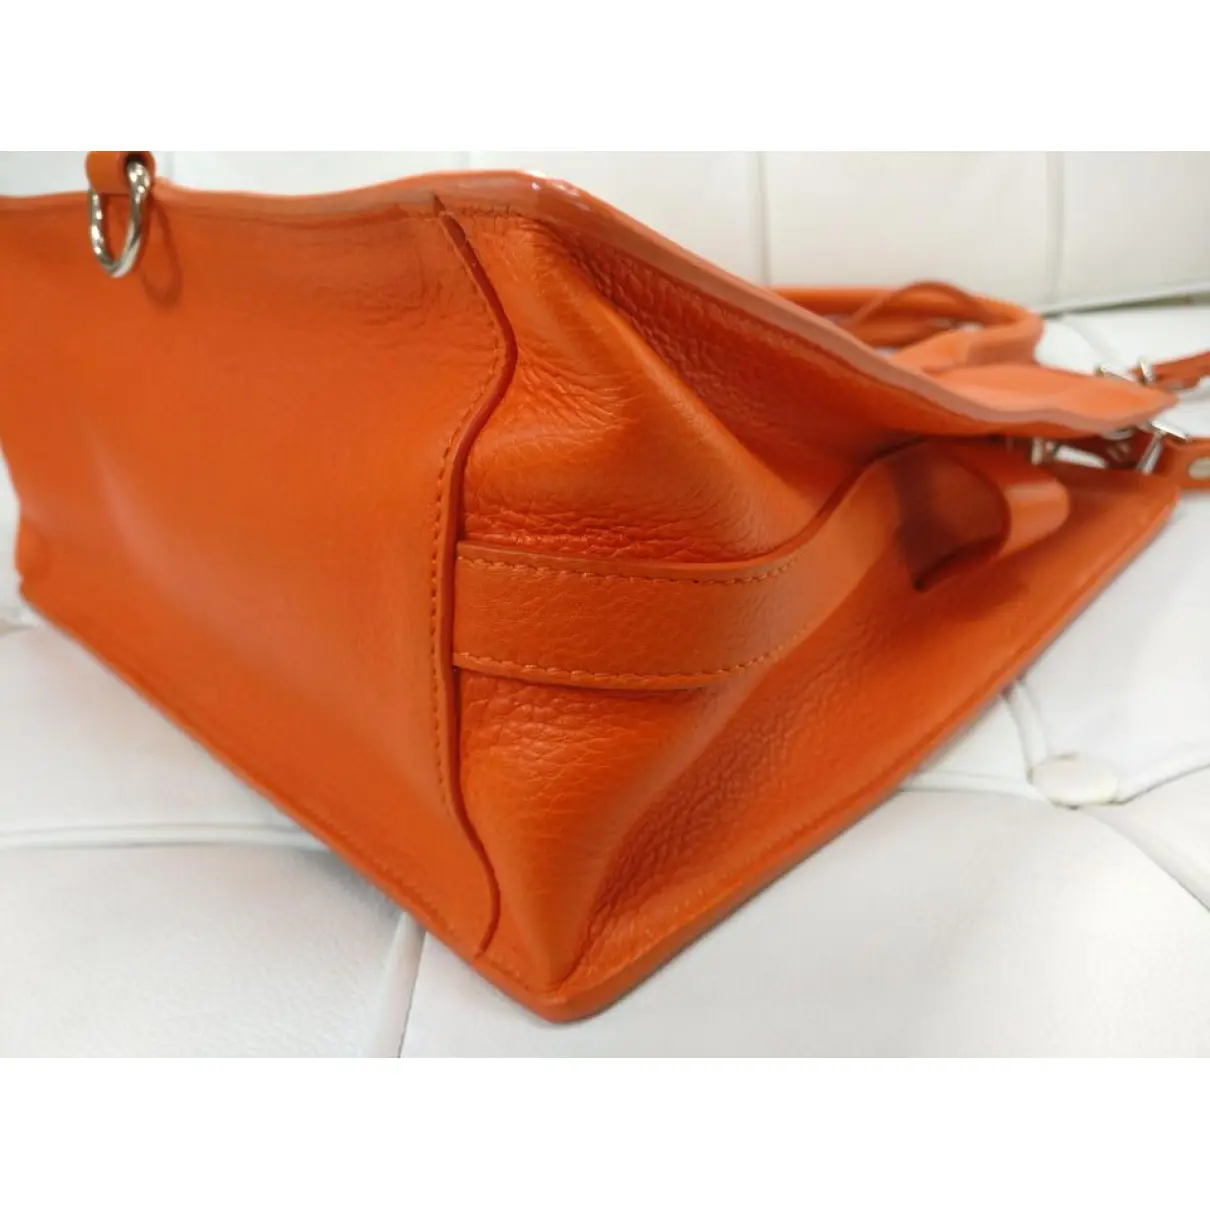 Leather satchel Proenza Schouler